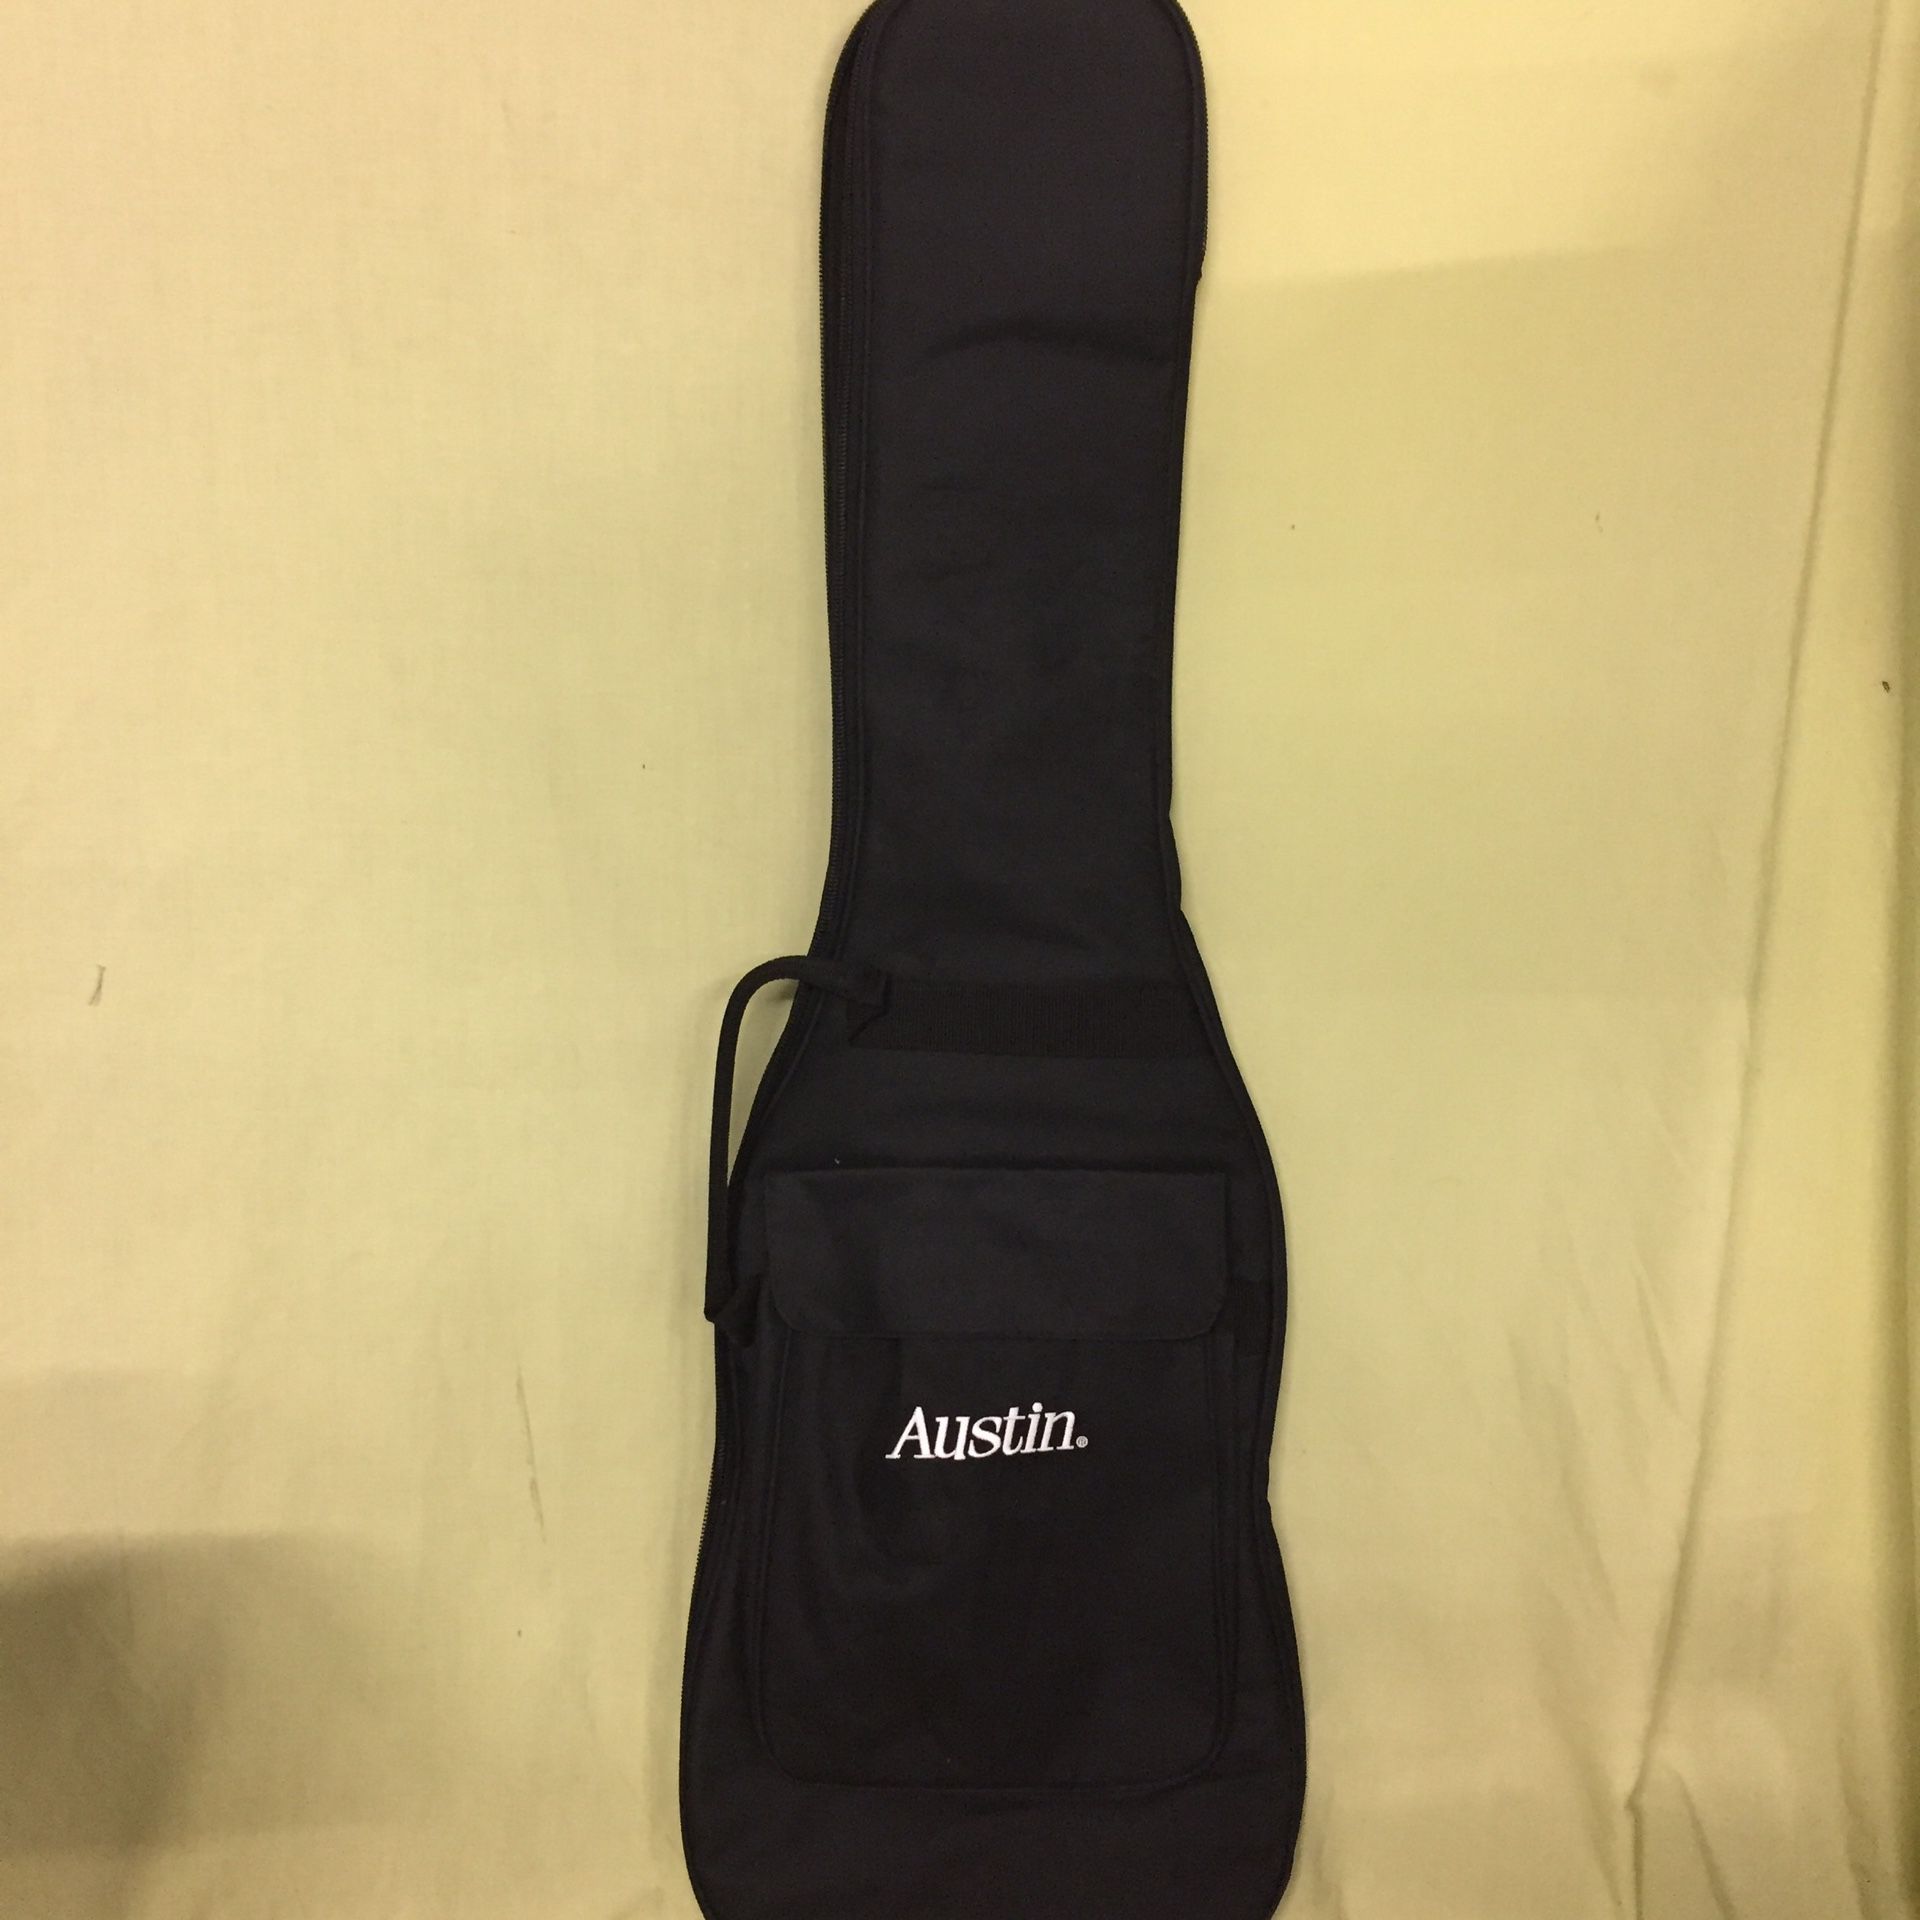 Austin padded Super Slim Electric Guitar Bag